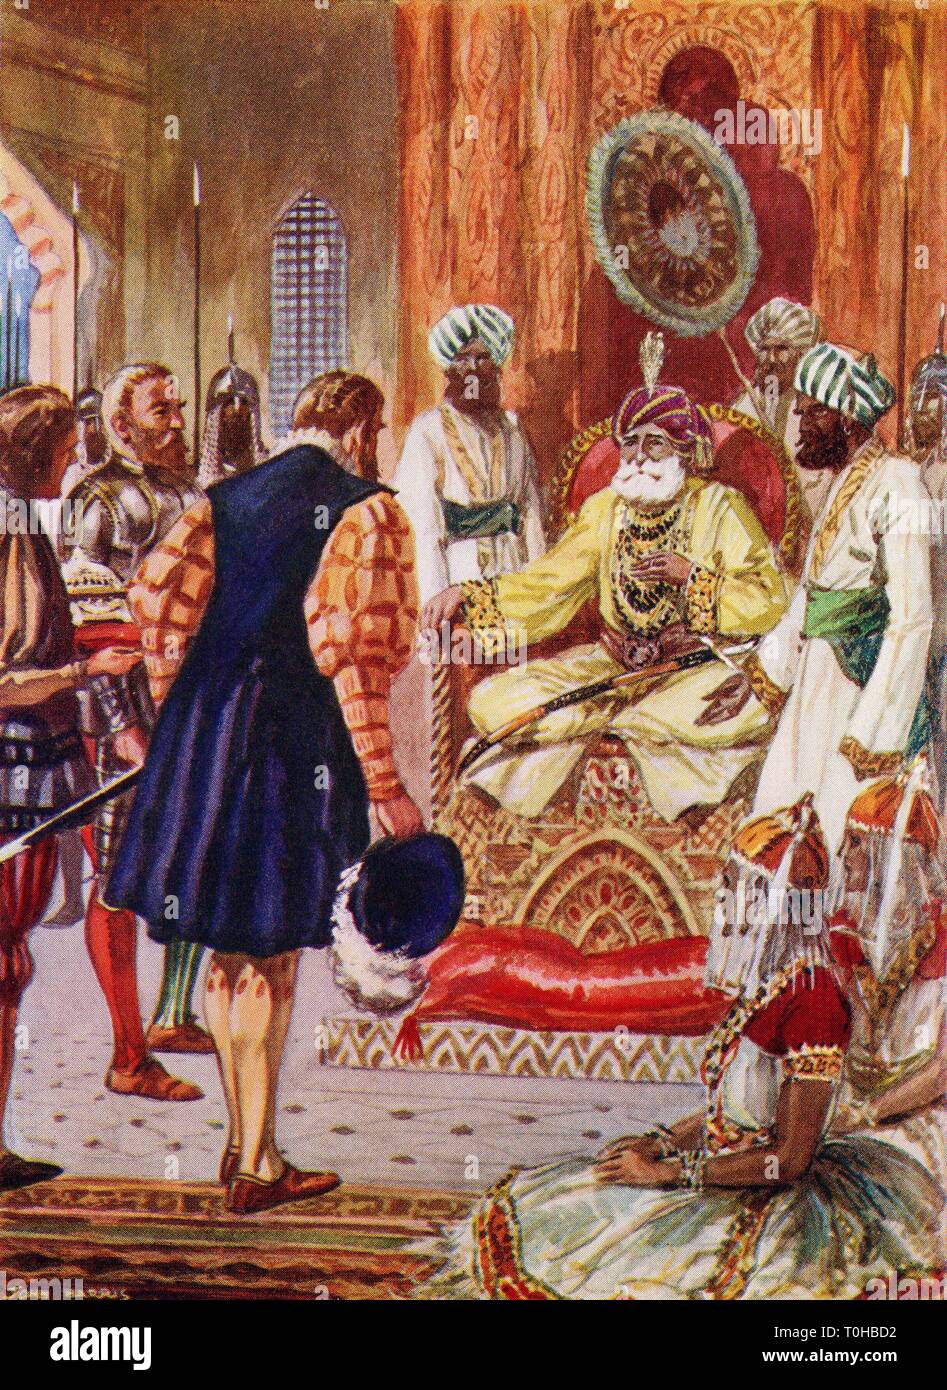 El Vasco da Gama, visitando el Rajá de Cannanore, India, 1498. Foto de stock